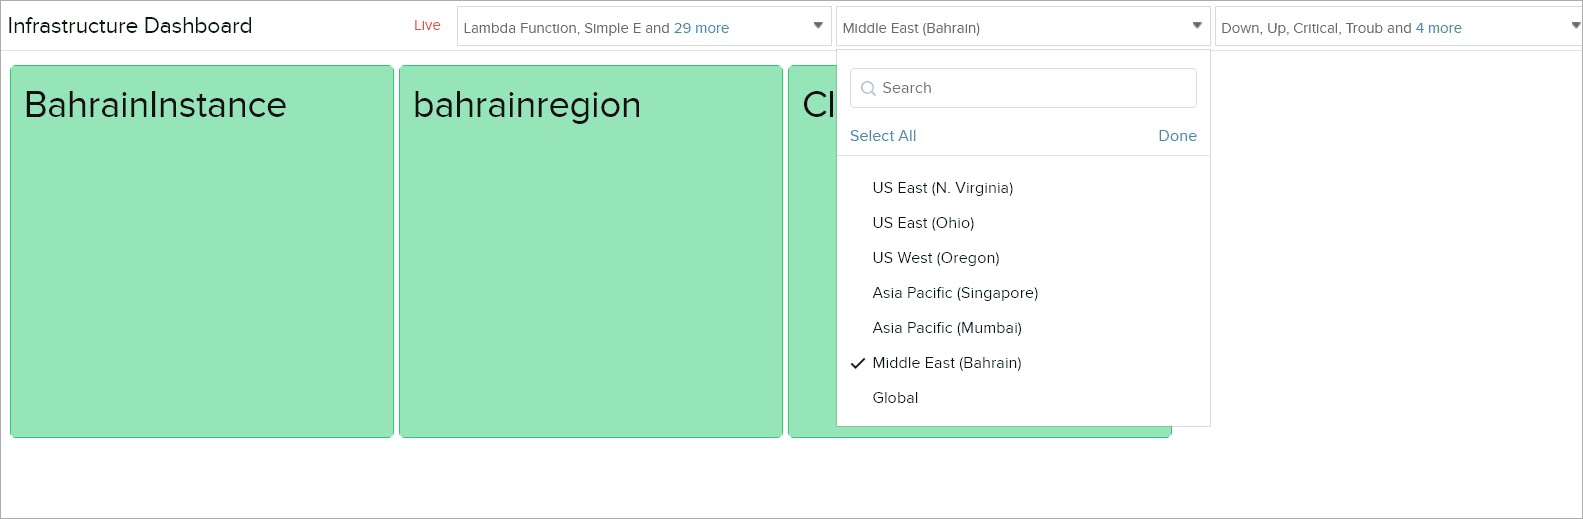 region-tile-info